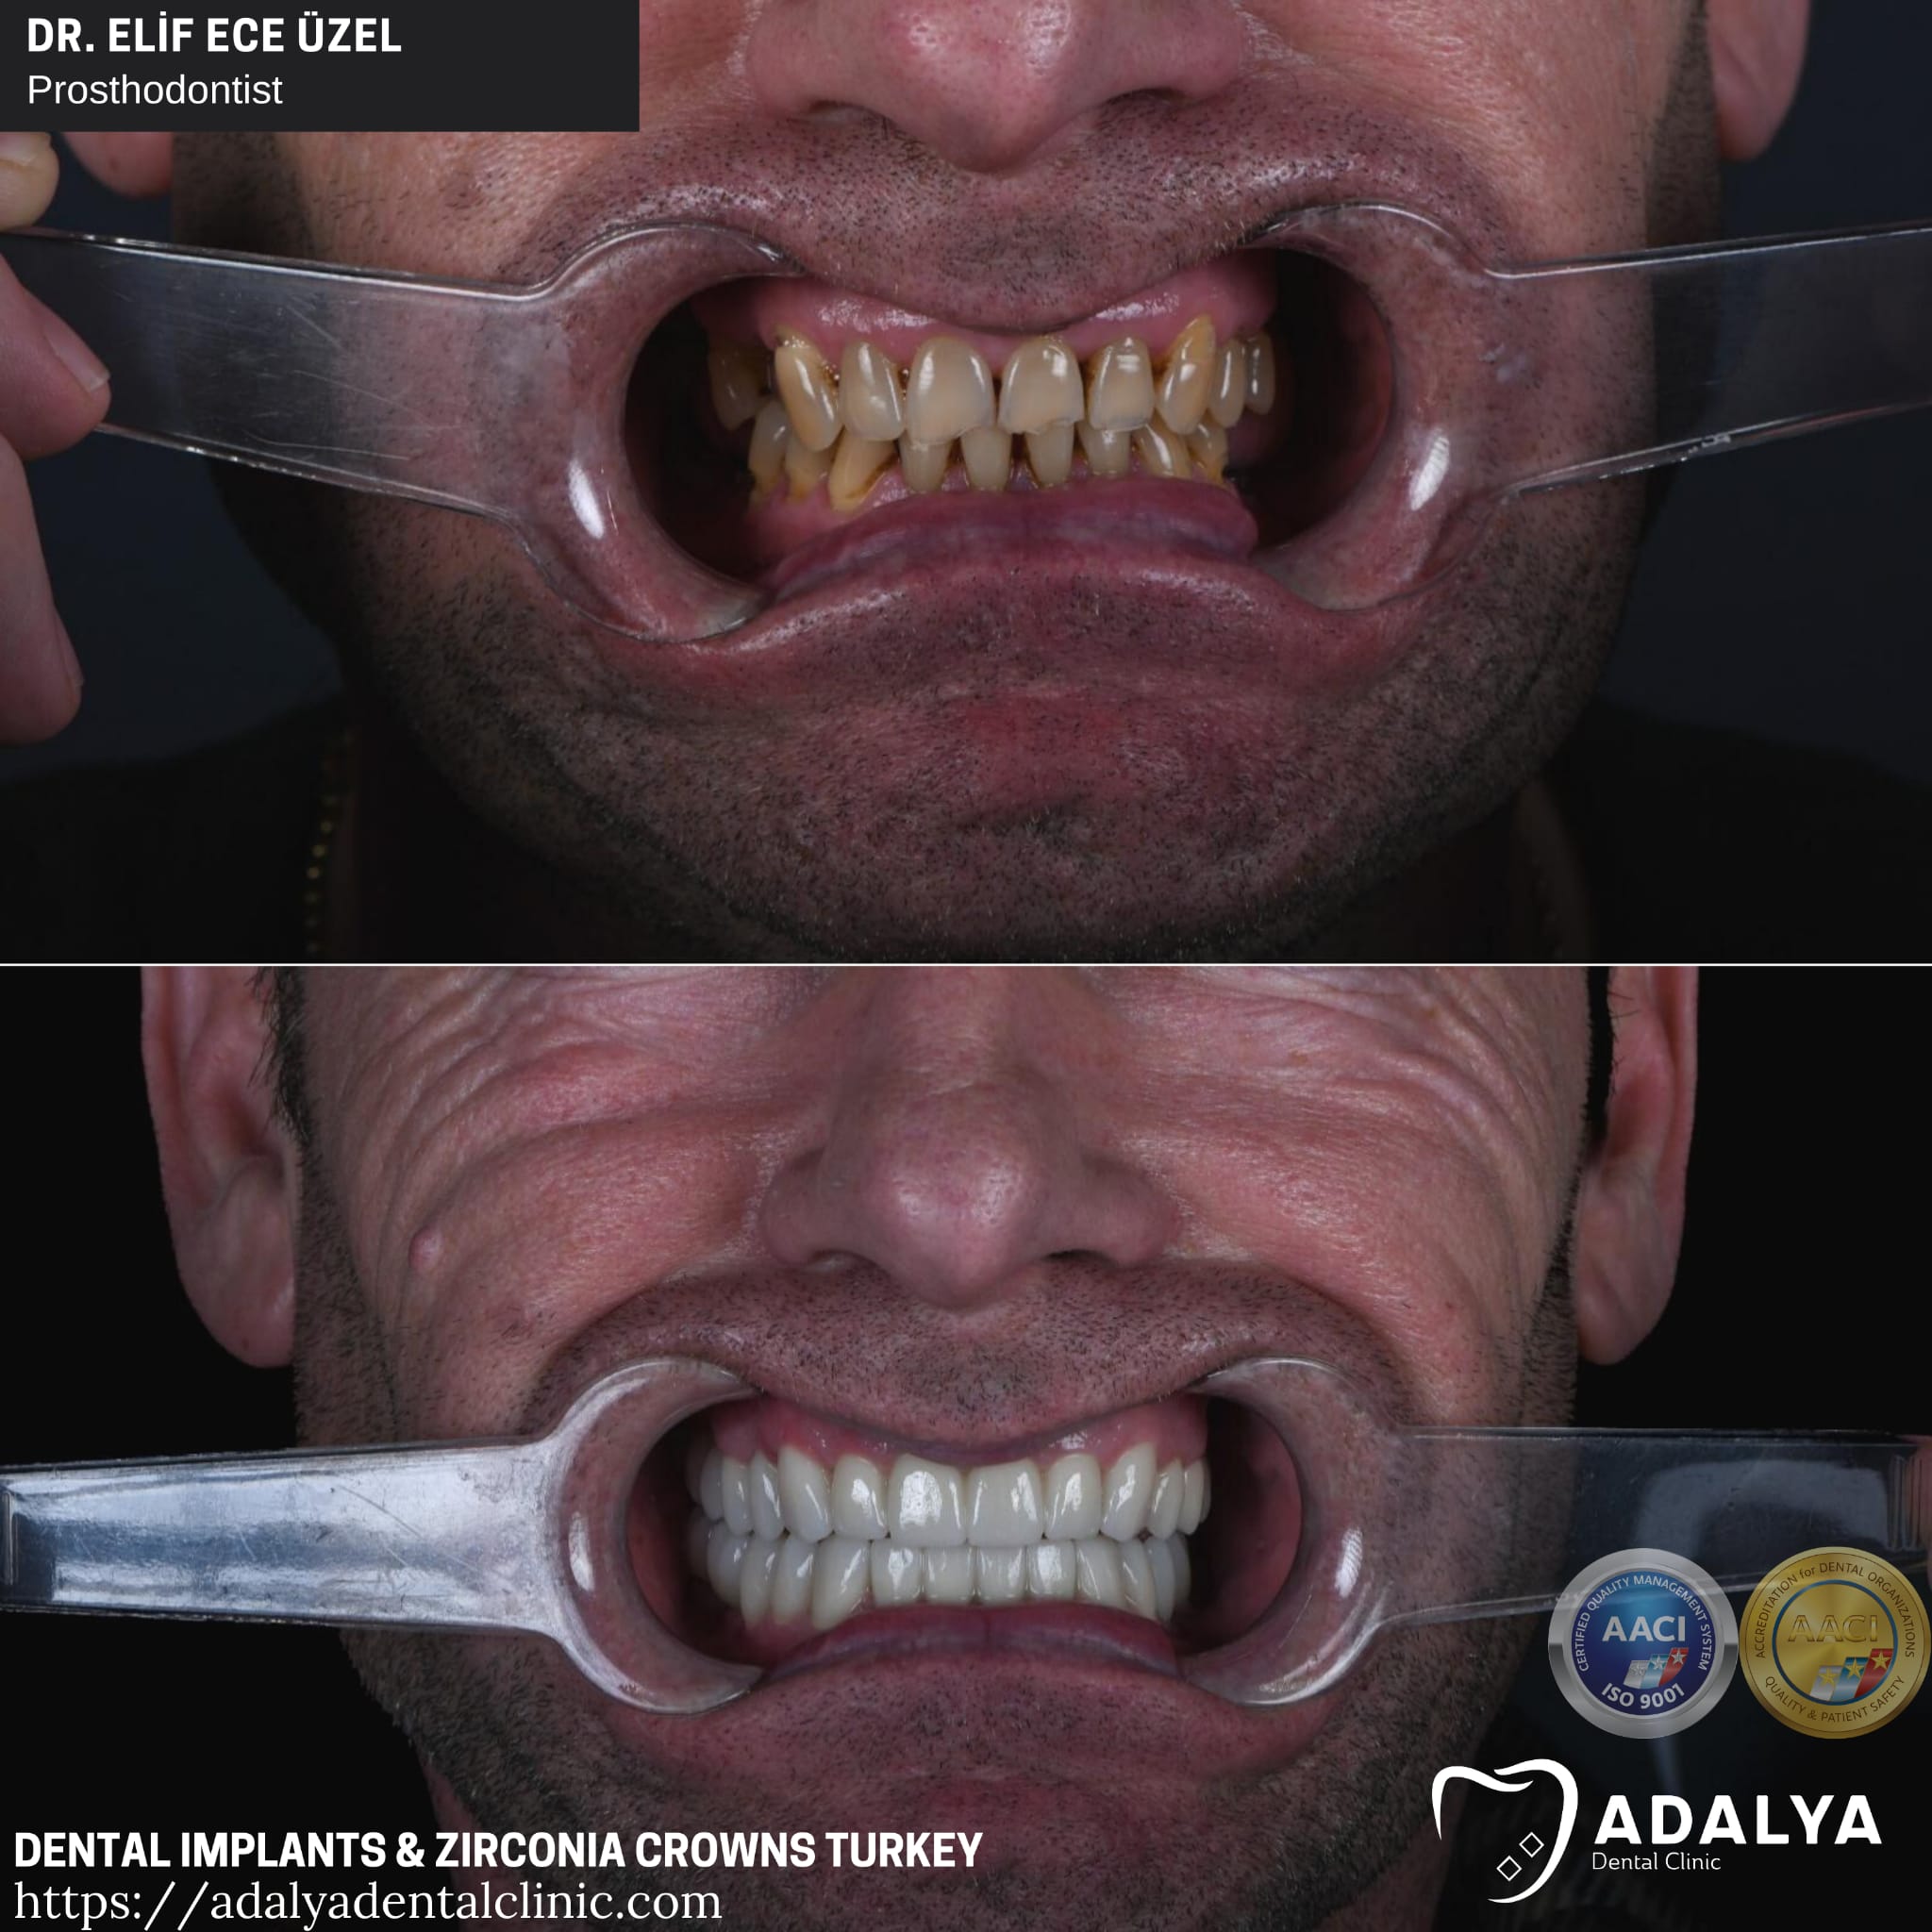 dental implants antalya turkey price cost packages adalya